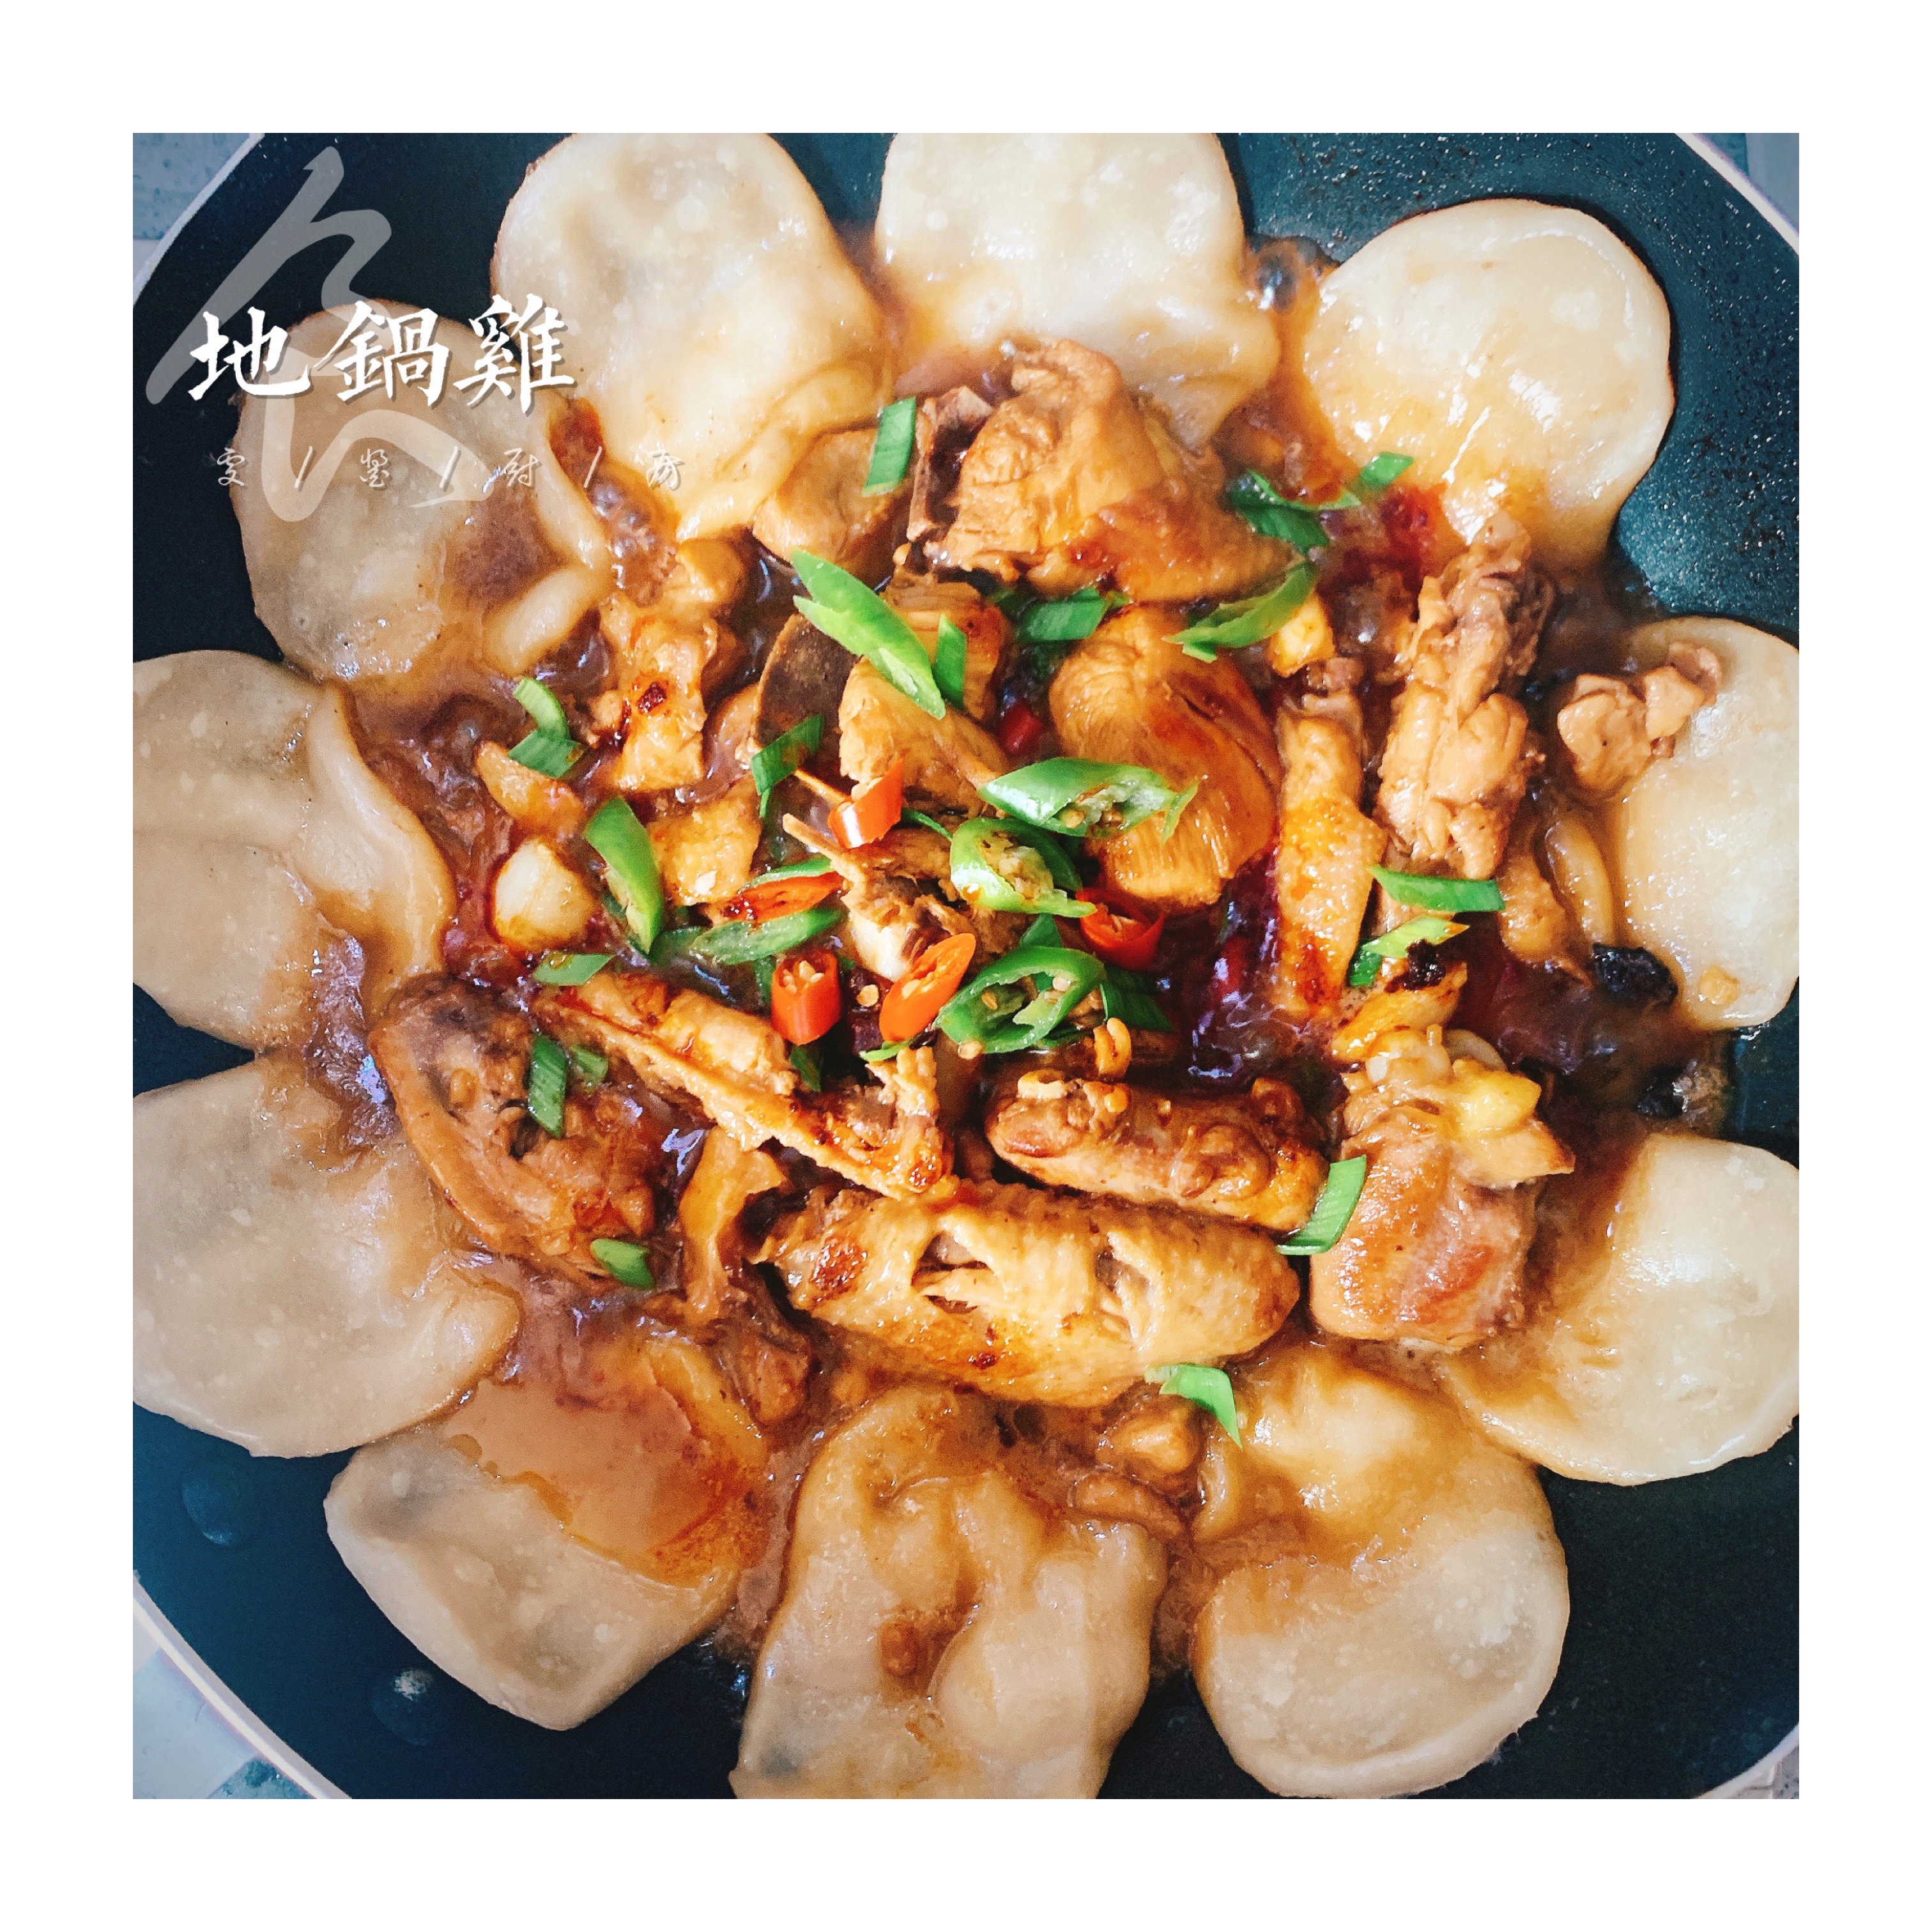 大吉大利🐔今天吃「地锅鸡」的做法